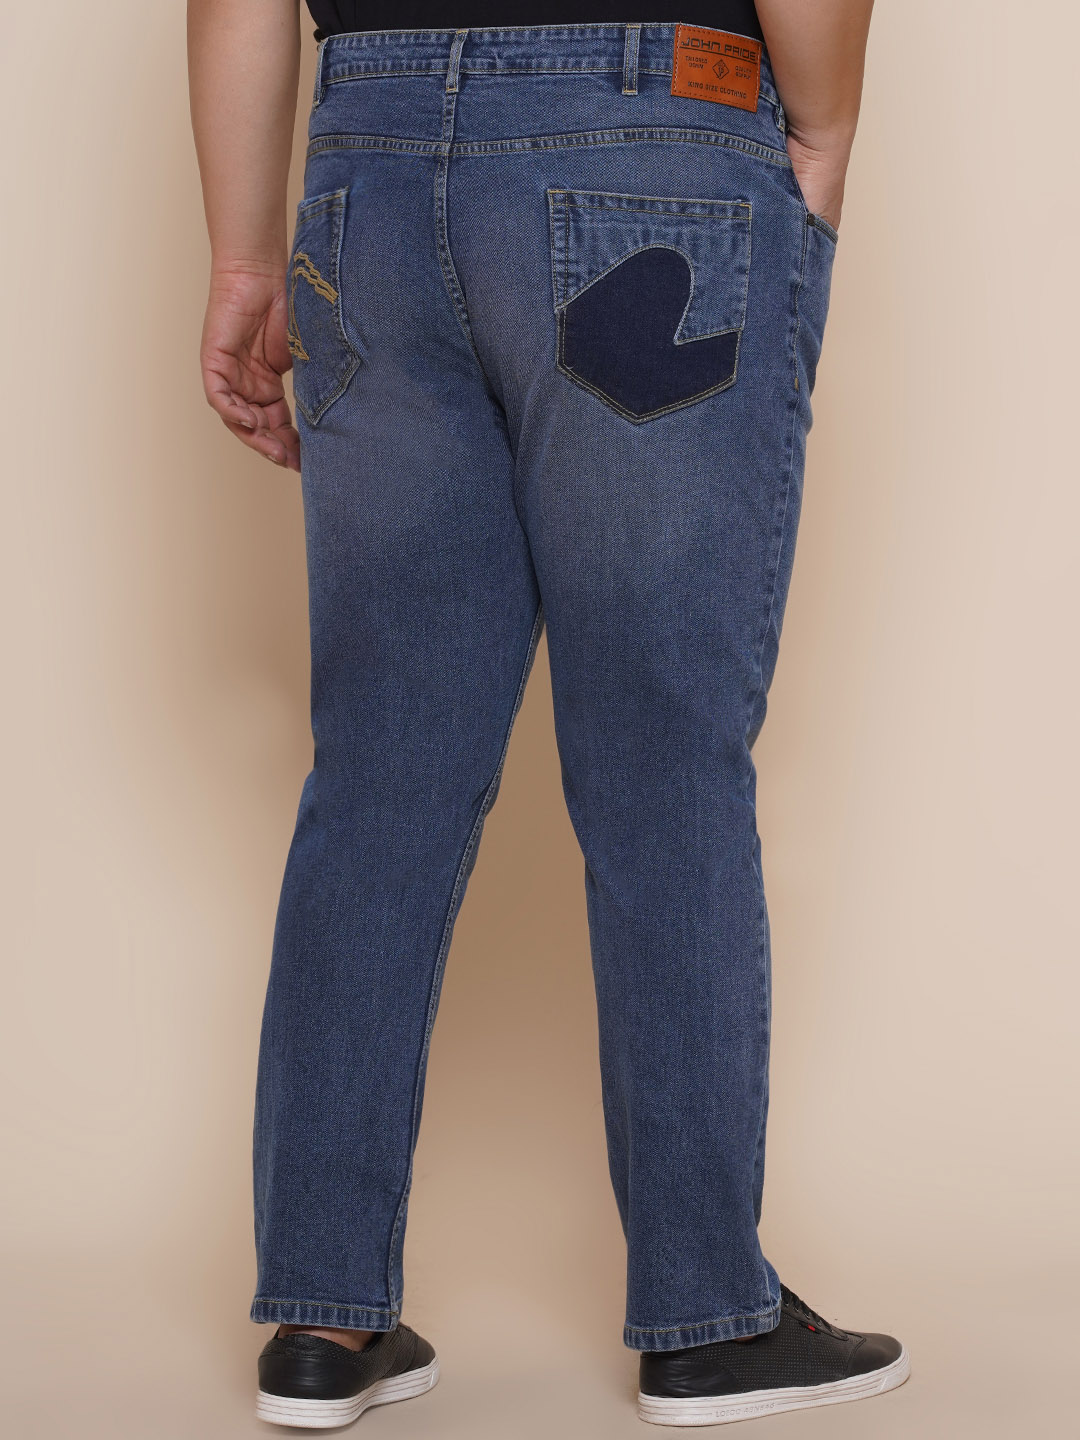 bottomwear/jeans/EJPJ25084/ejpj25084-5.jpg